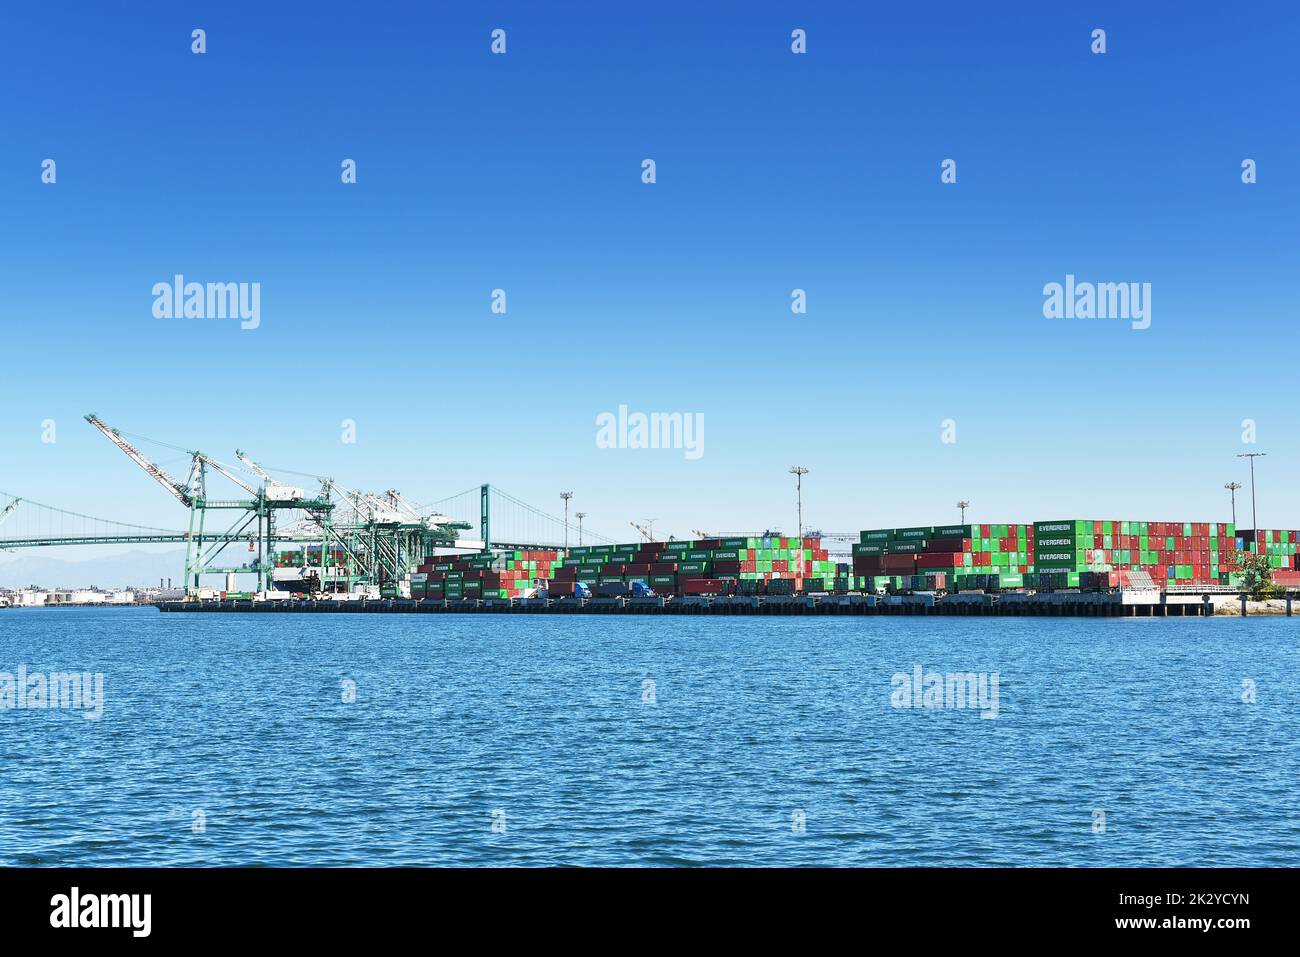 SAN PEDRO, KALIFORNIEN - 21 SEP 2022: Schiffscontainer auf dem Dock im Hauptkanal des Hafens von Los Angeles. Stockfoto